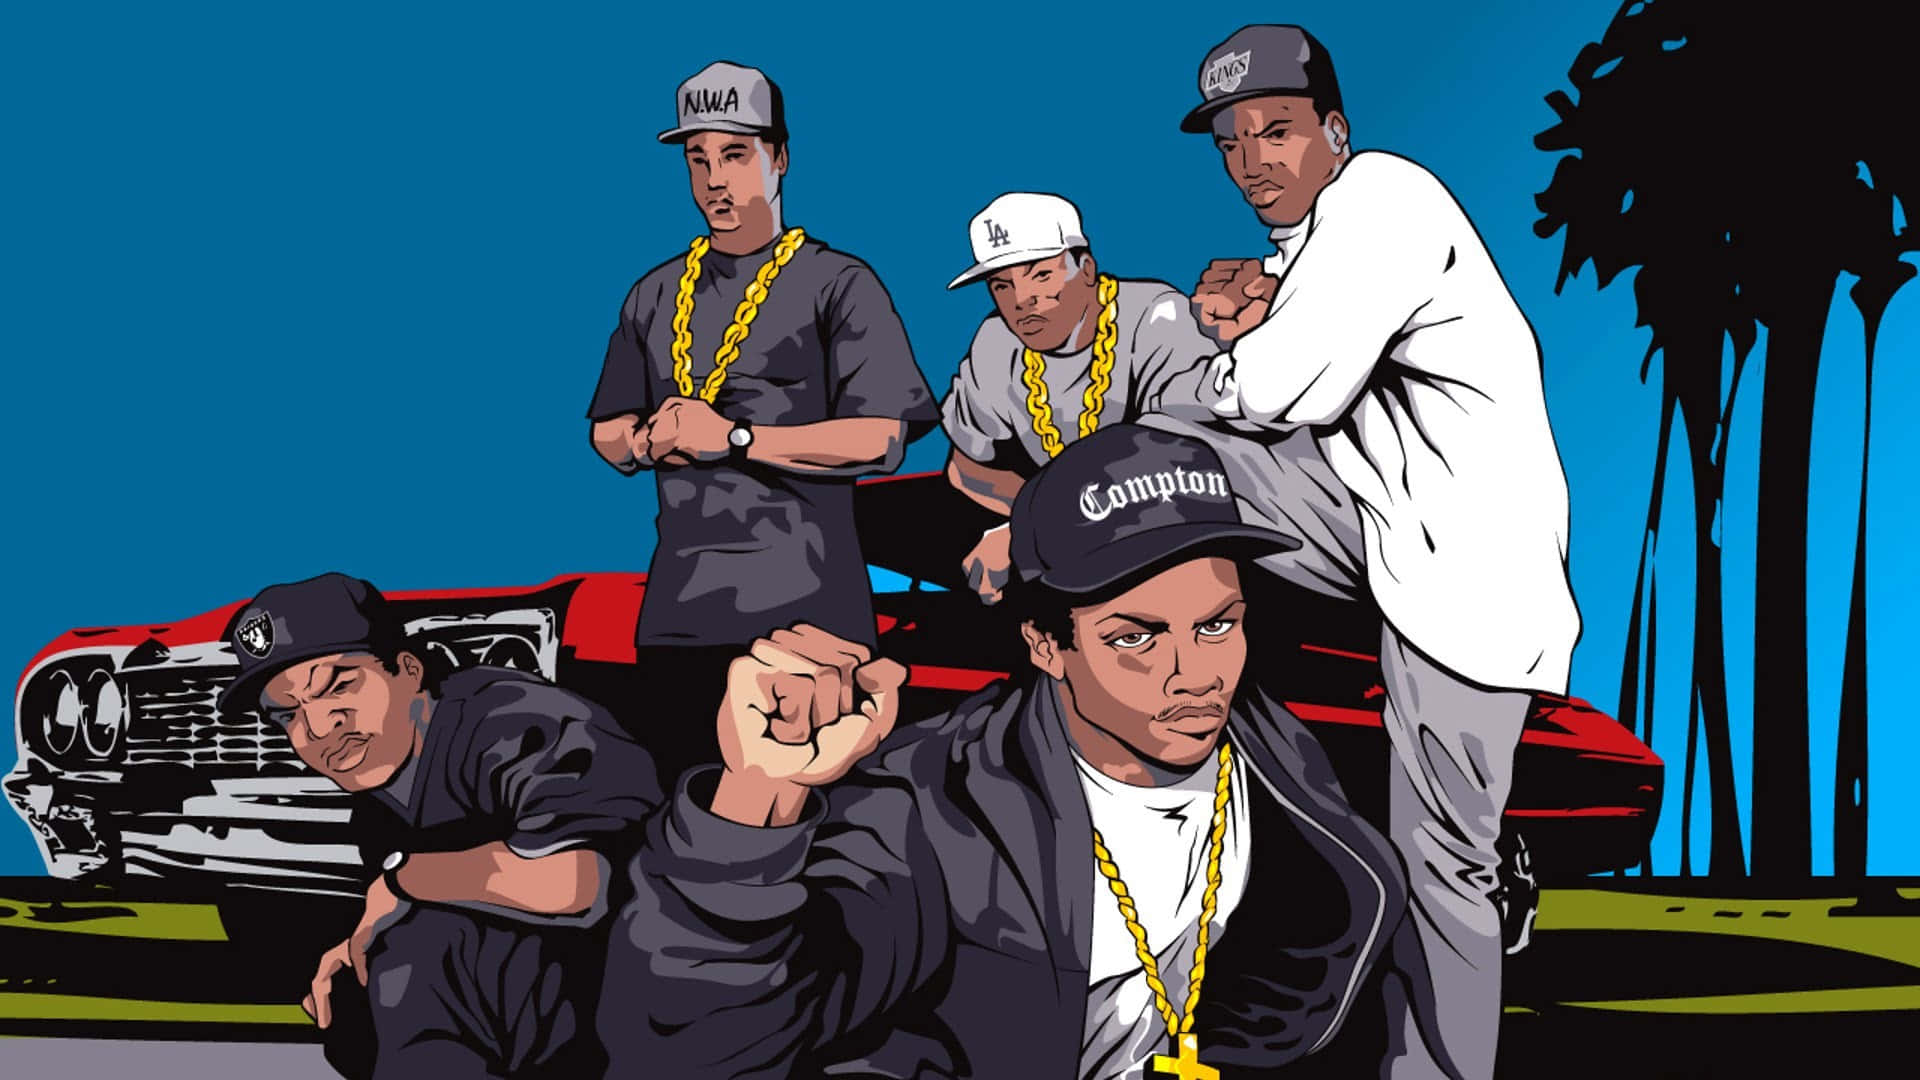 NWA Rap Background Digital Art